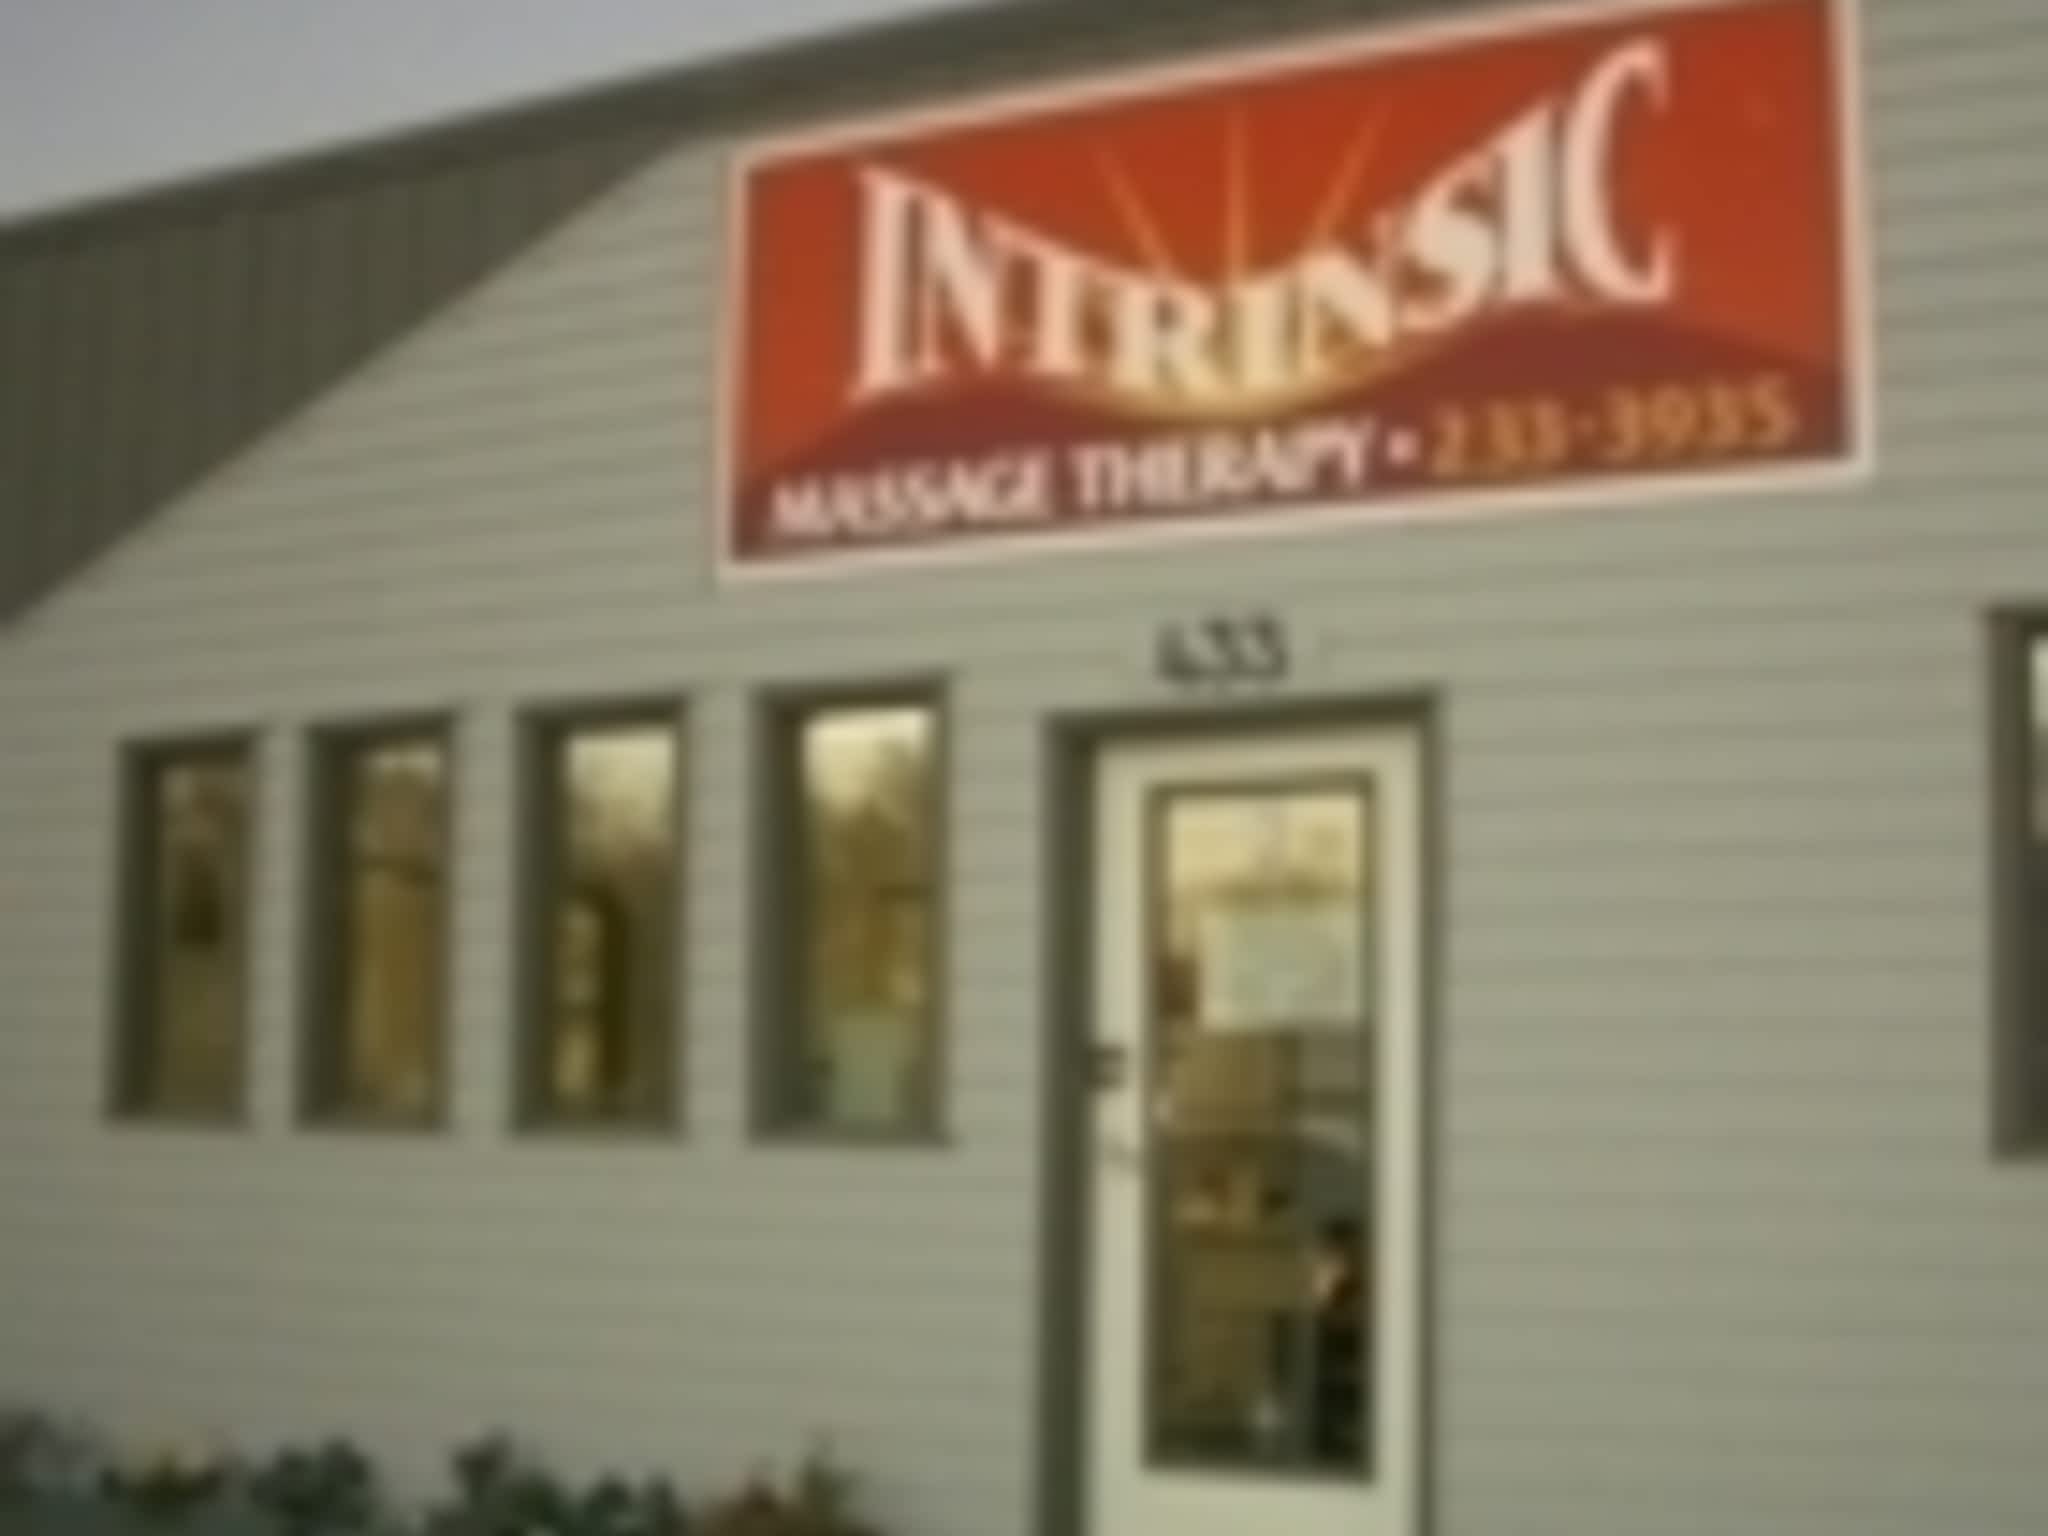 photo Intrinsic Massage Therapy